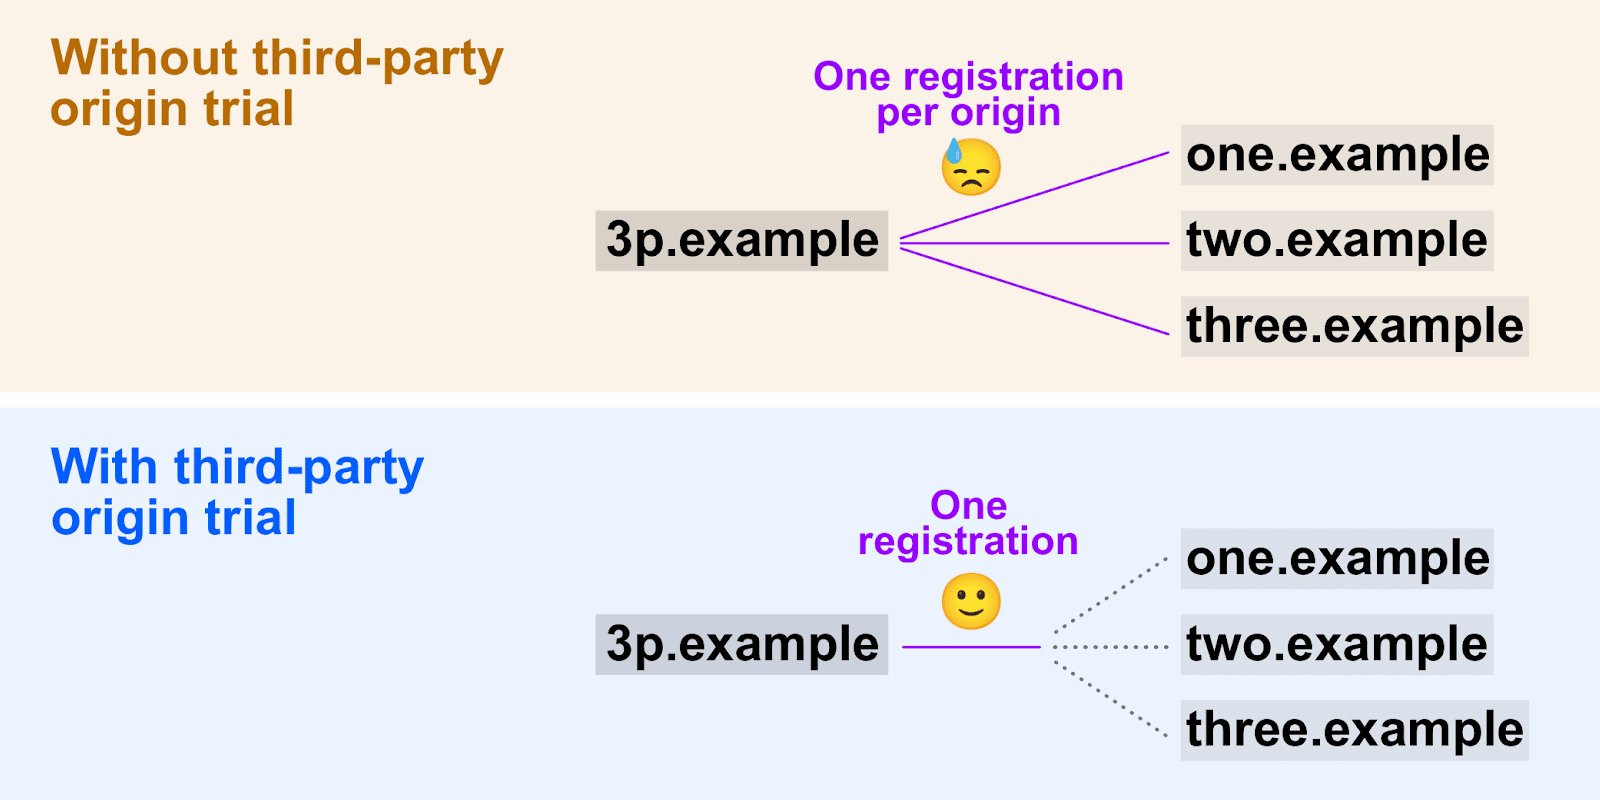 Diagrama mostrando como
   testes de origem de terceiros permitem que um único token de registro seja usado em várias origens.